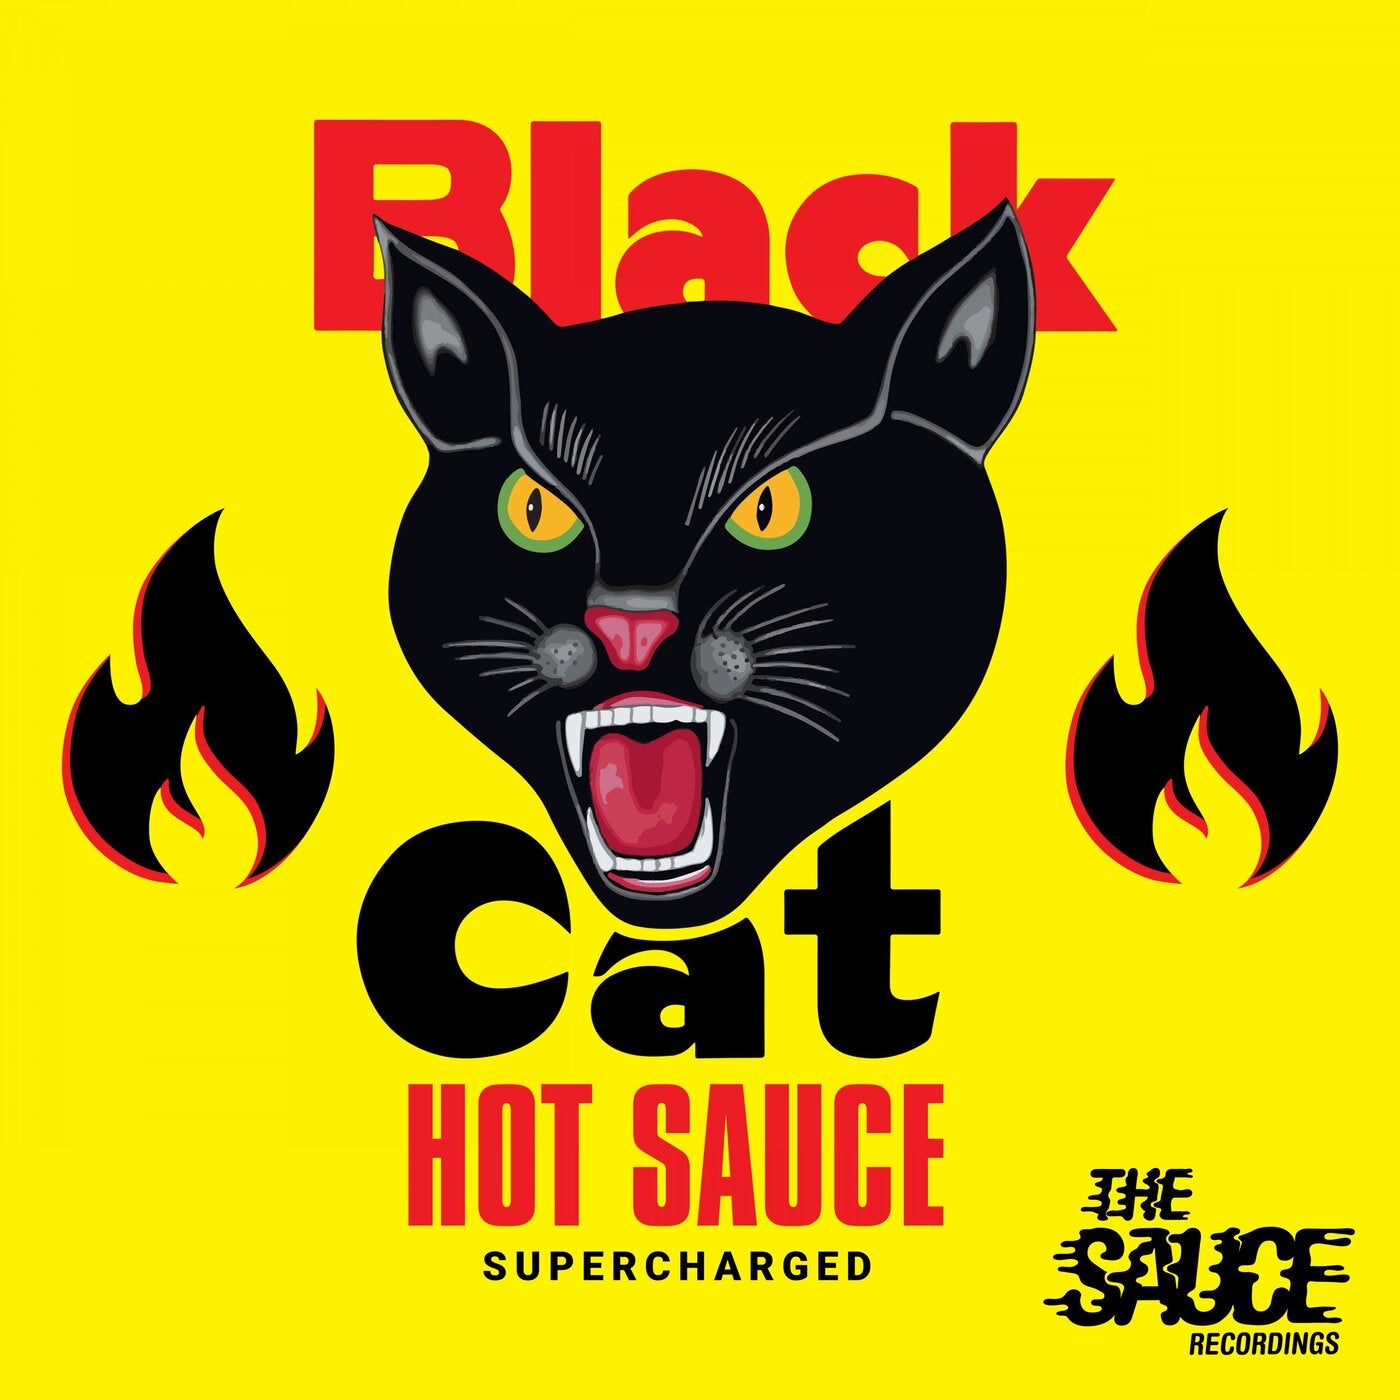 Black Cat Hot Sauce